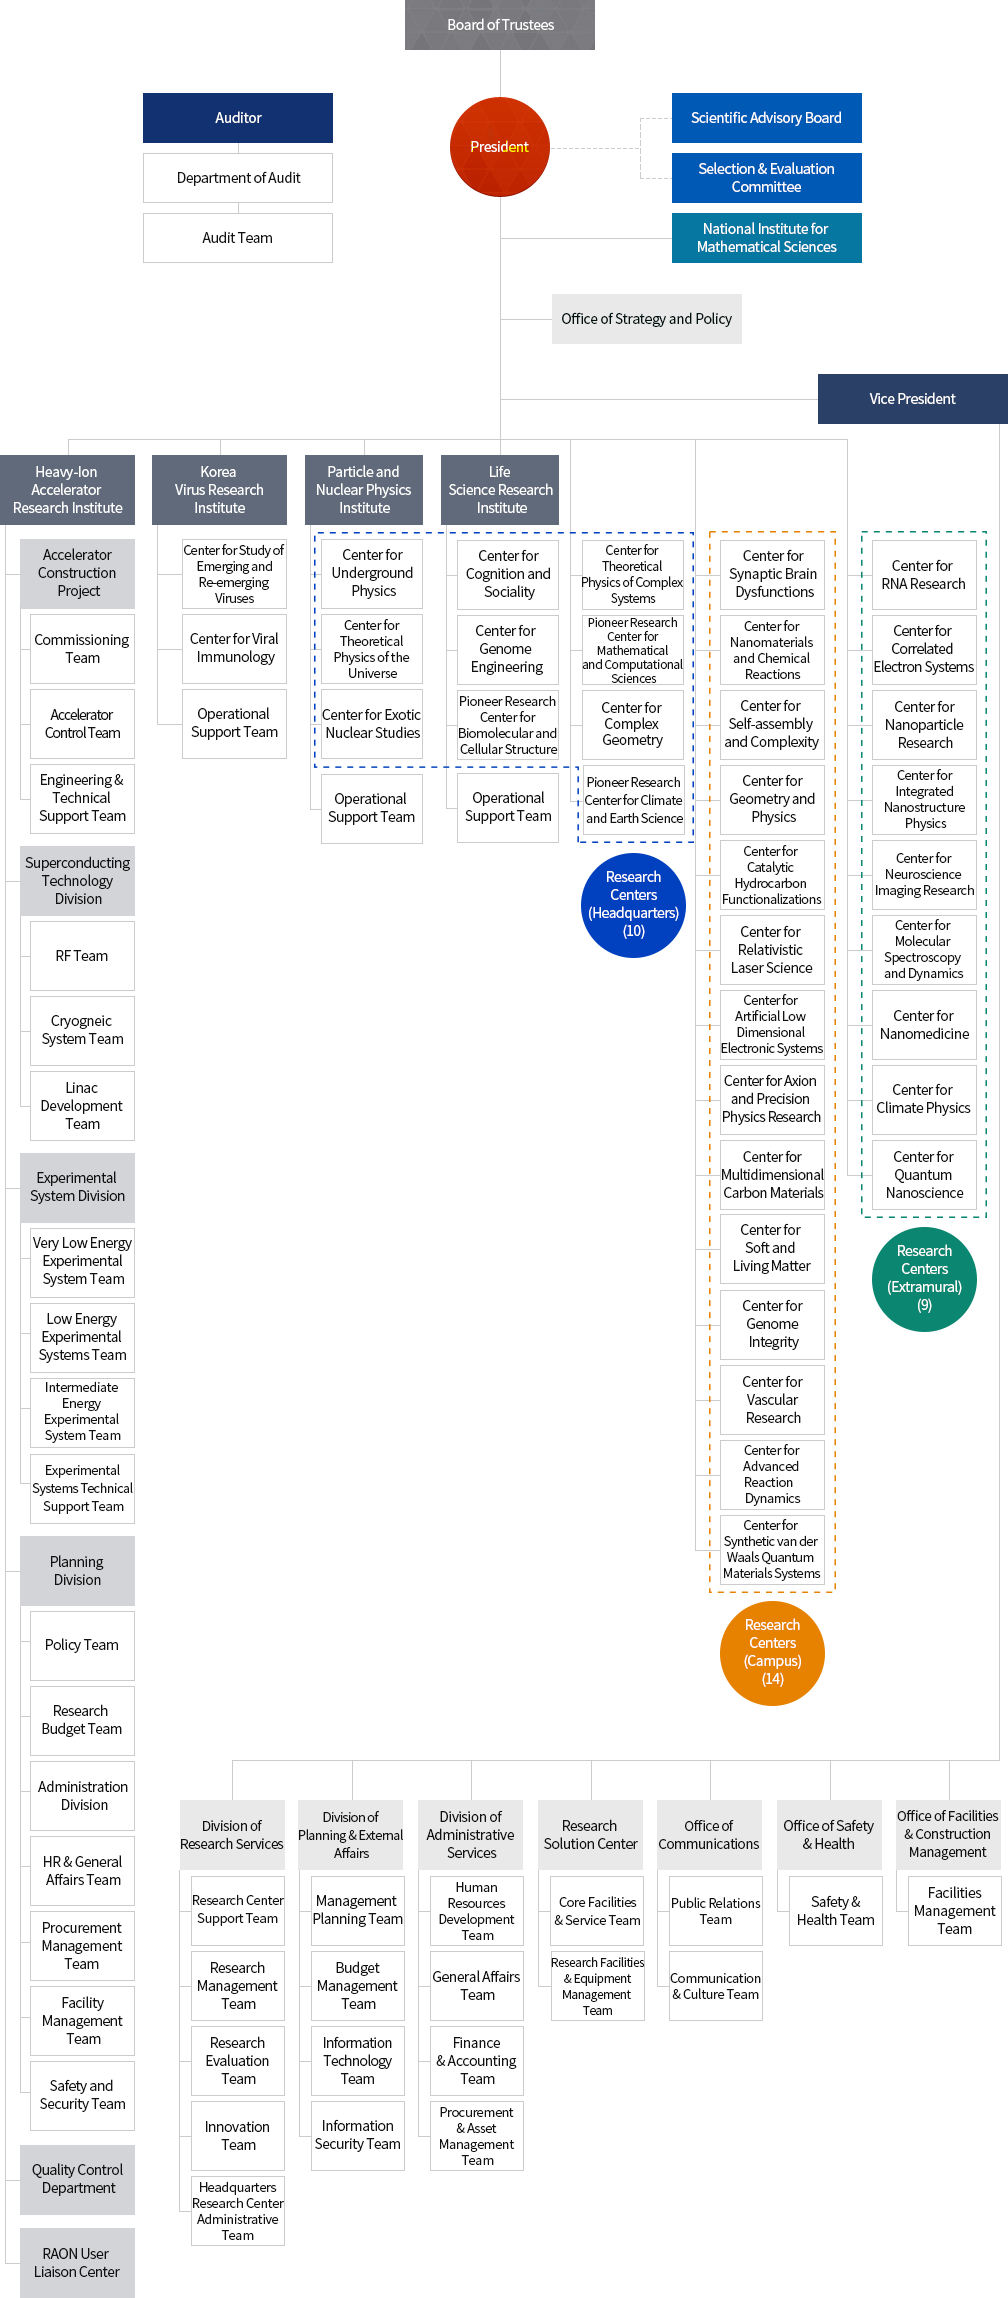 ibs Organization Chart